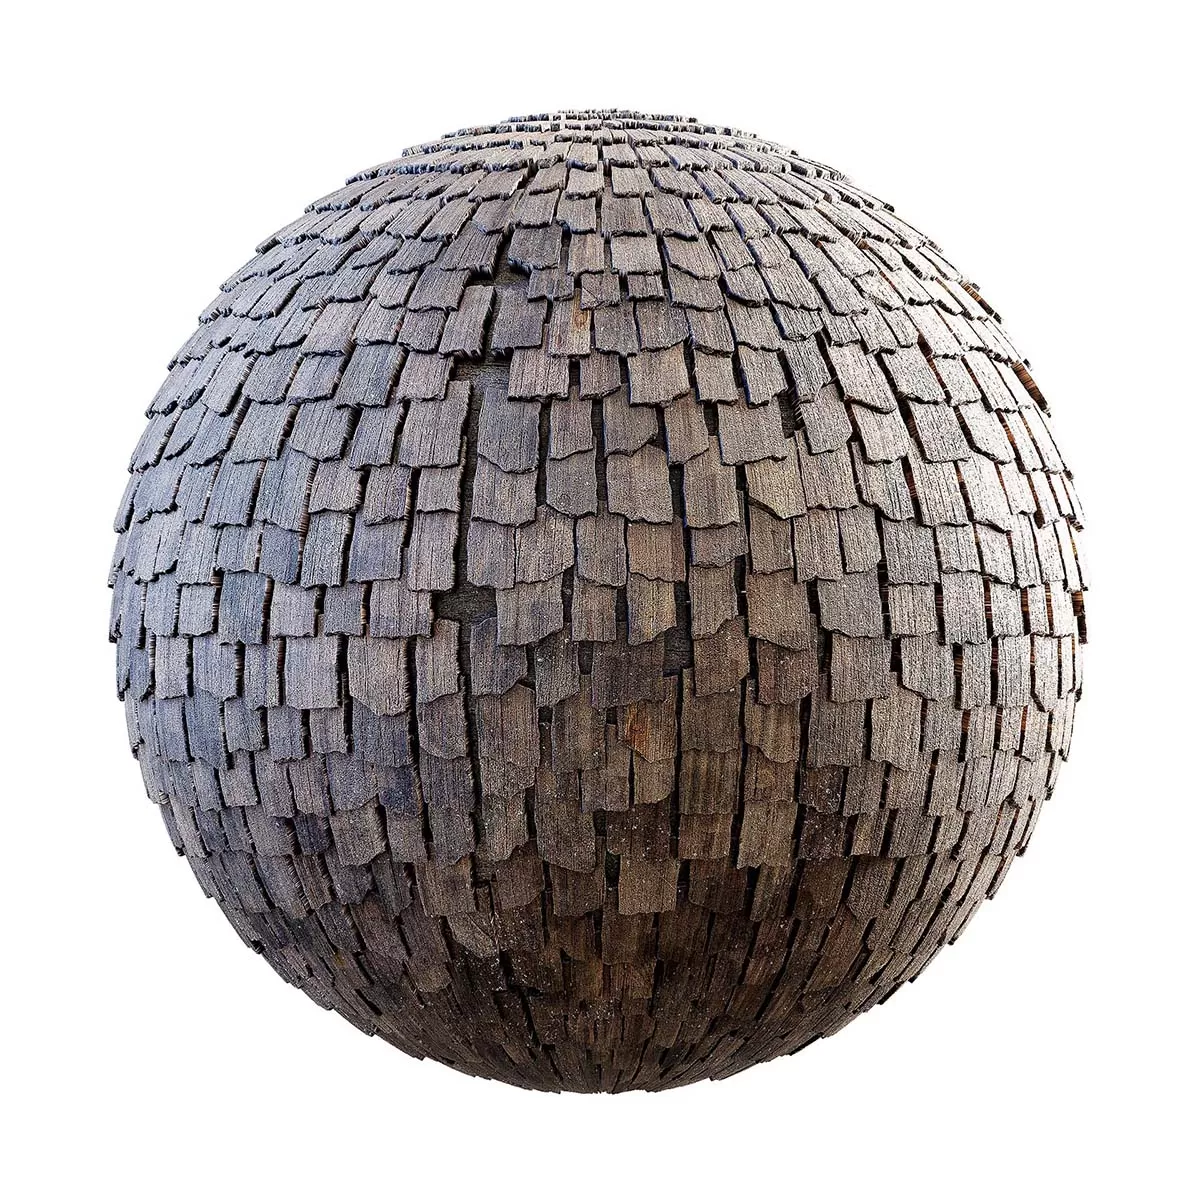 PBR Textures Volume 29 – Medieval – 4K – 8K – wooden_roof_tiles_29_30